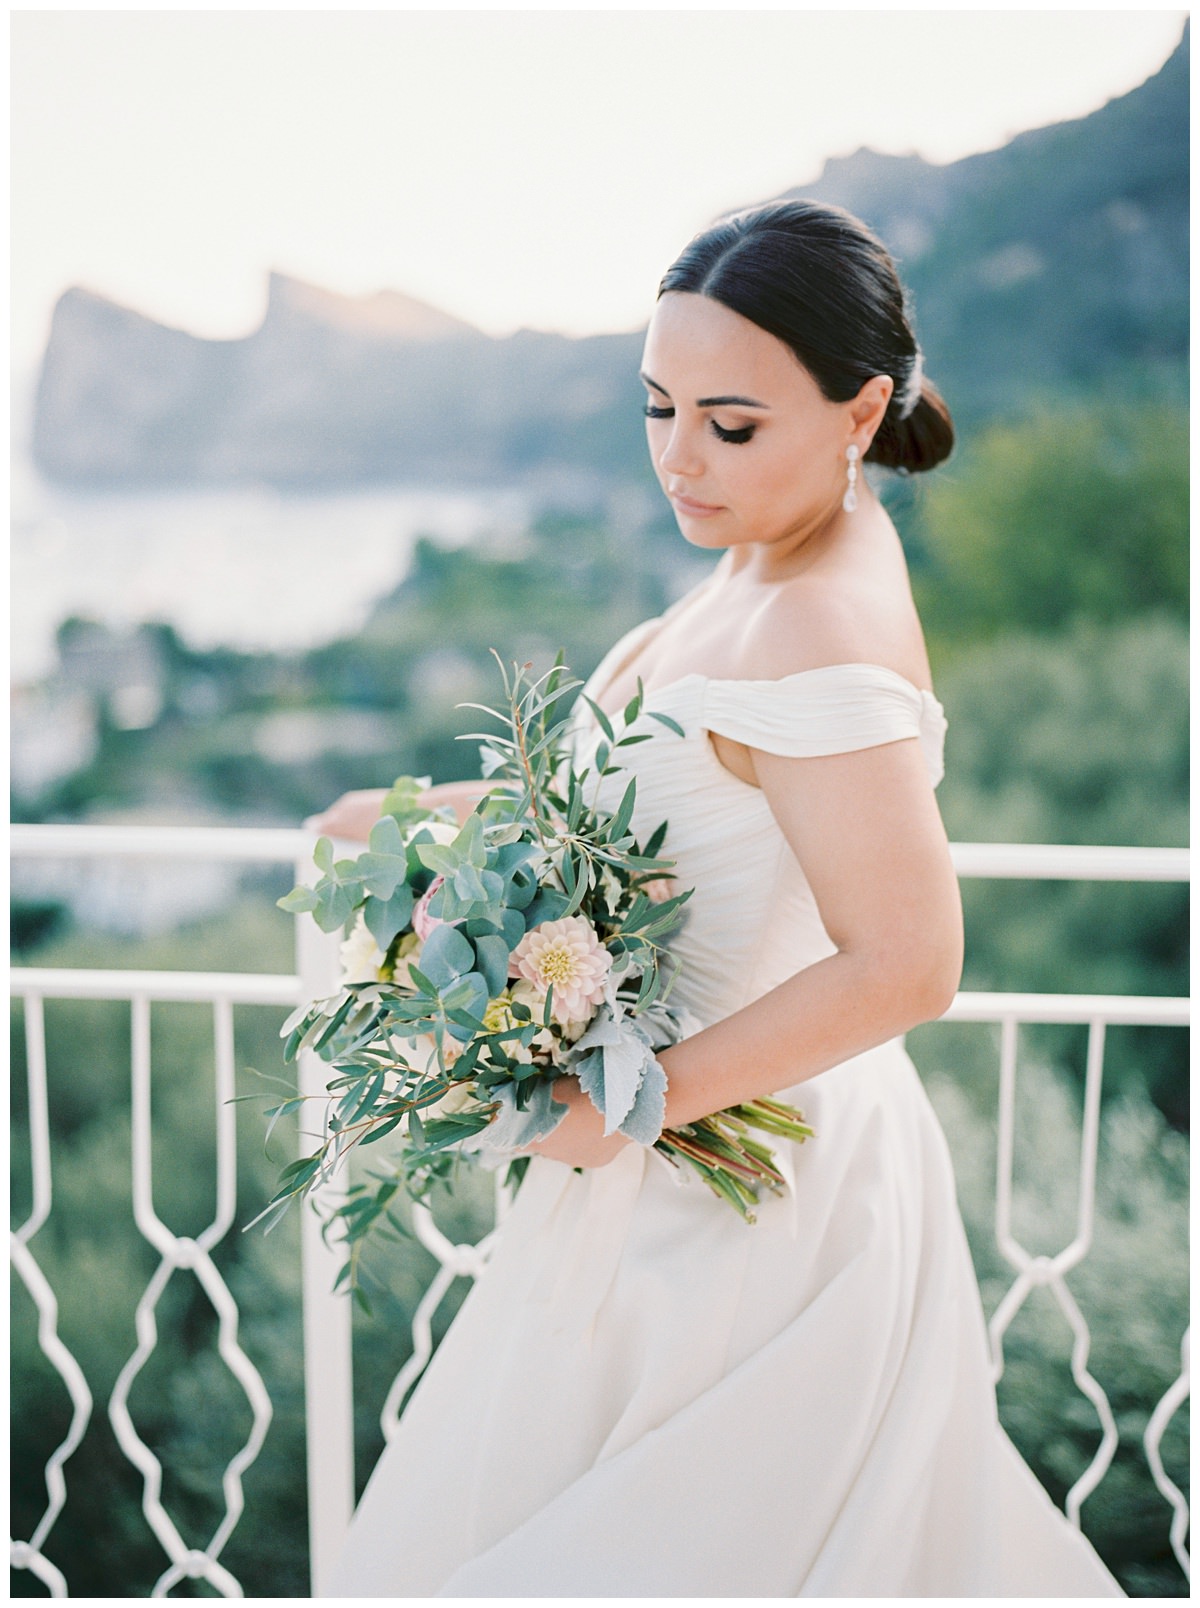 Positano Wedding Photographer, Amalfi Coast wedding Photographer, Italy wedding photographer,